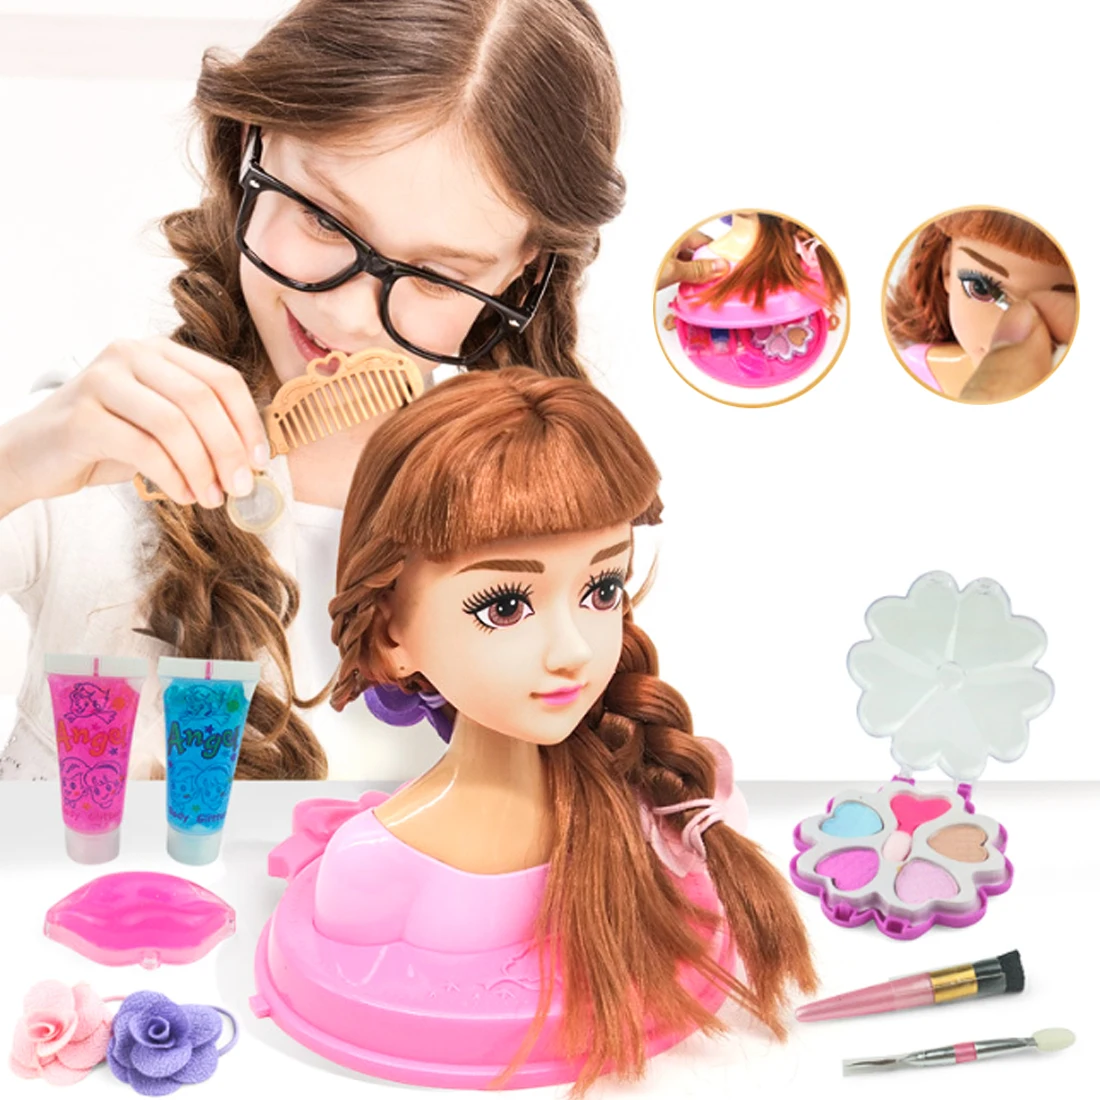 Детская голова модель половина тела кукла игрушка макияж прическа красота моделирование пластиковая игрушка-случайный цвет